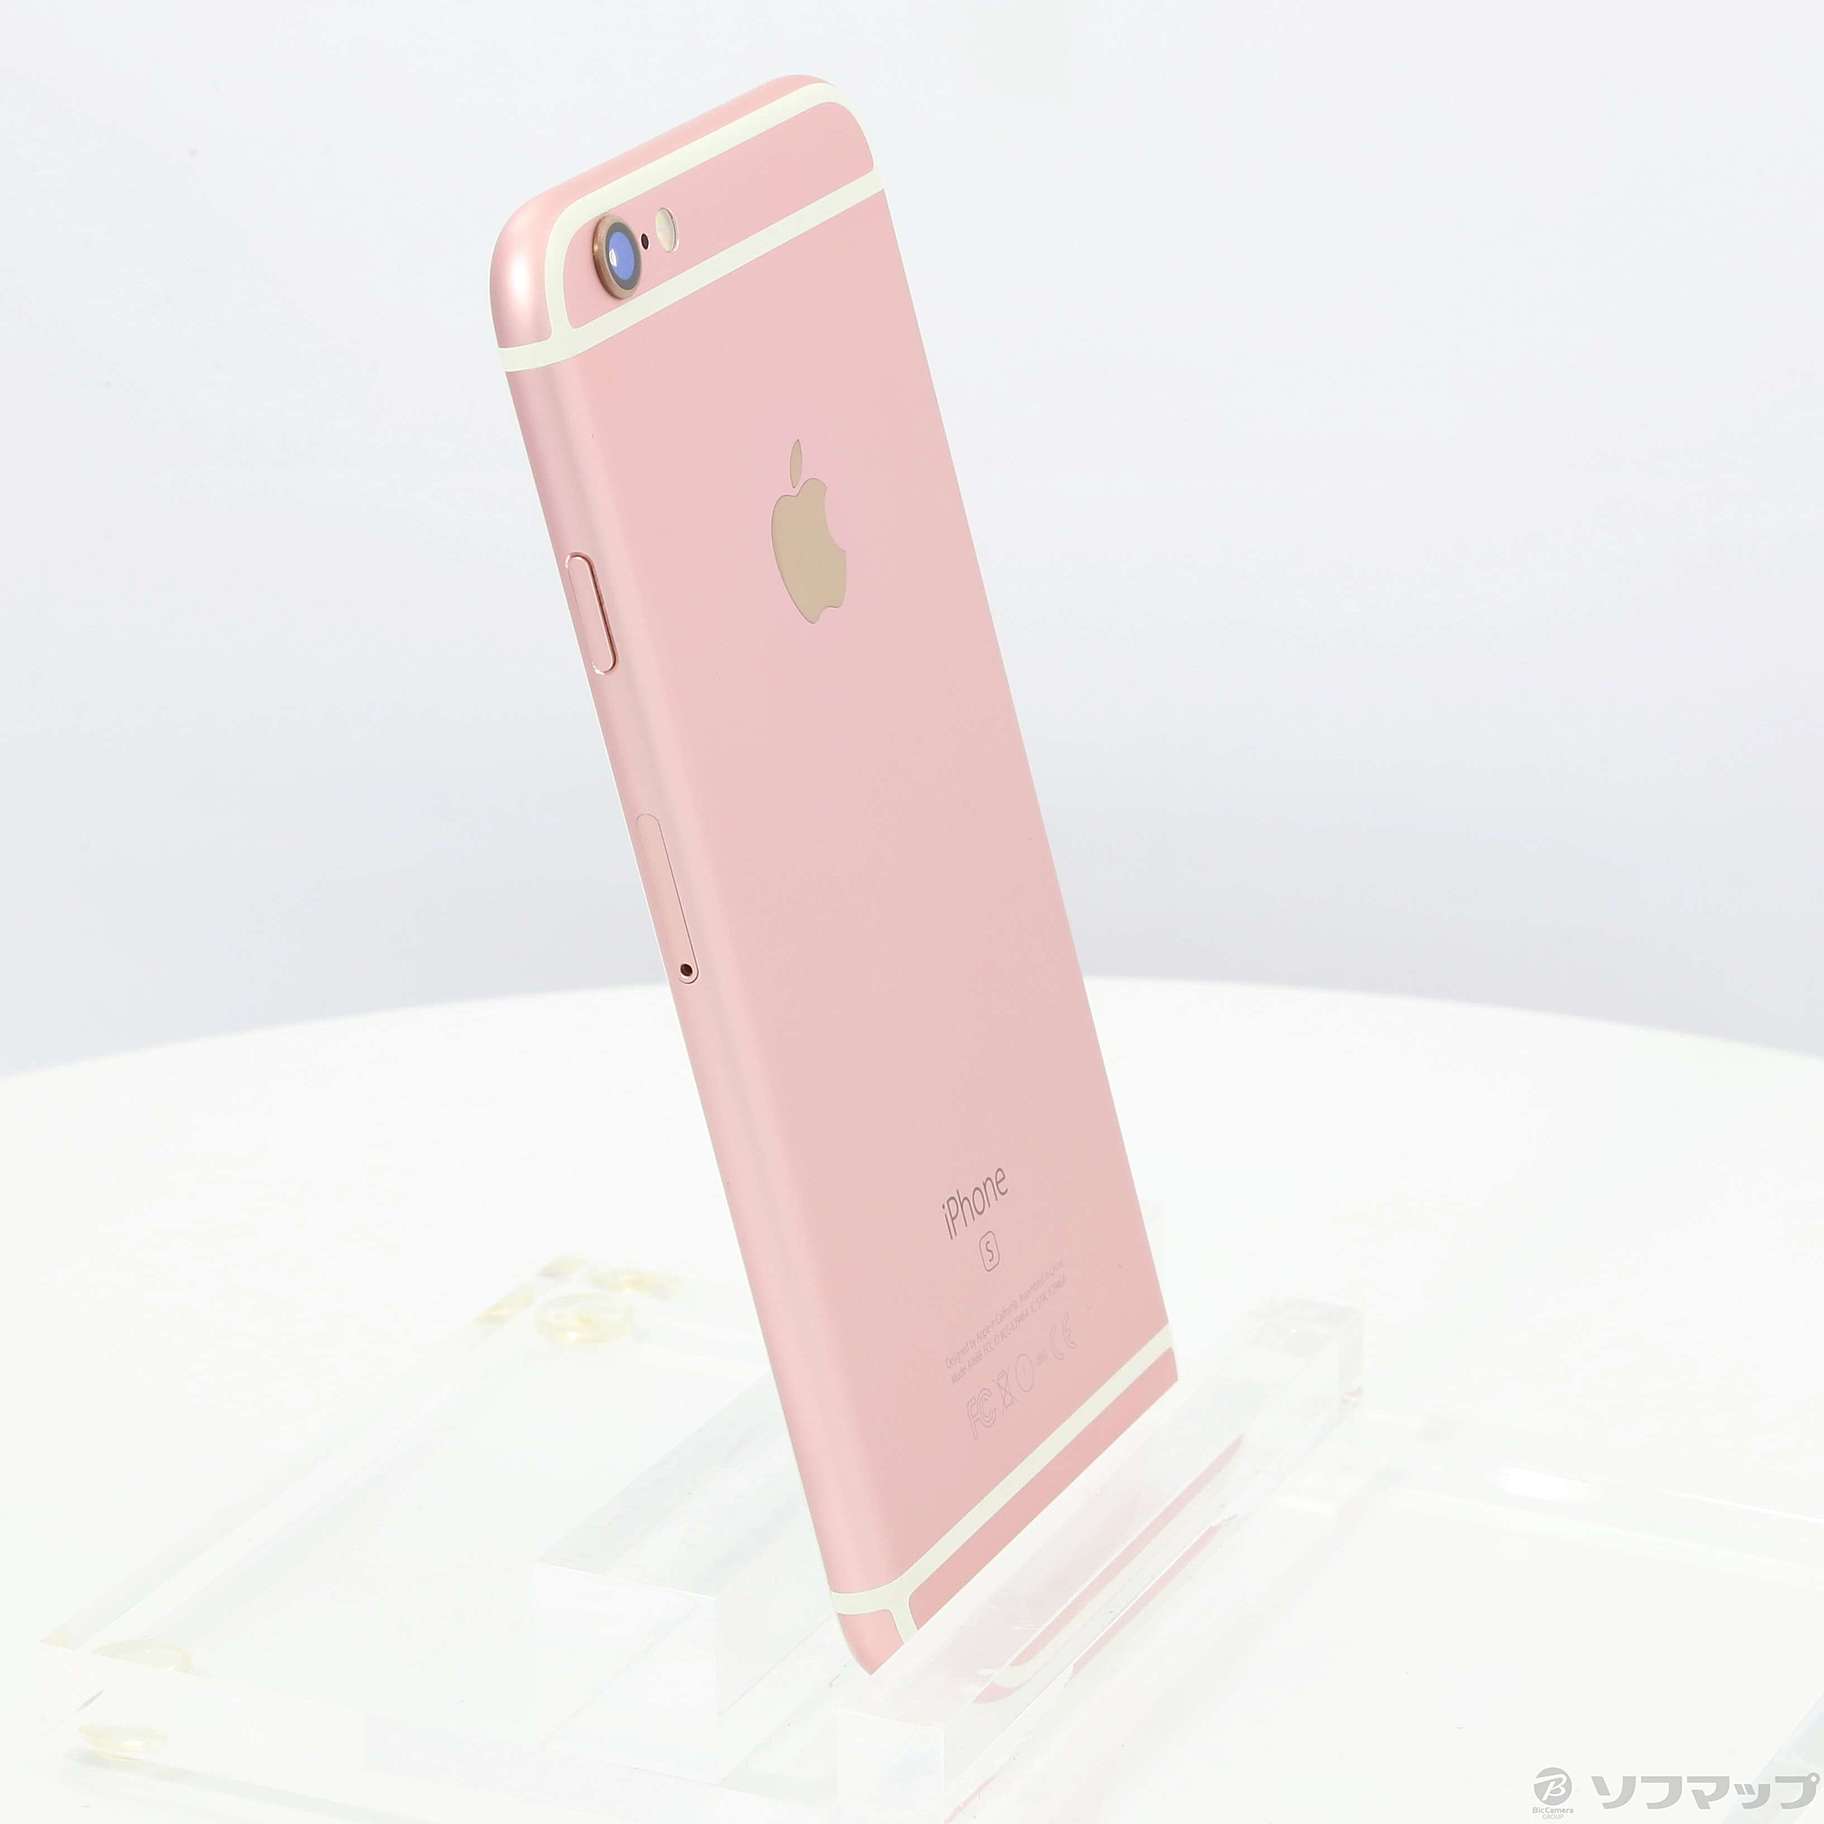 激安/新作 - Apple iPhone6S ゴールド 128G スマートフォン本体 